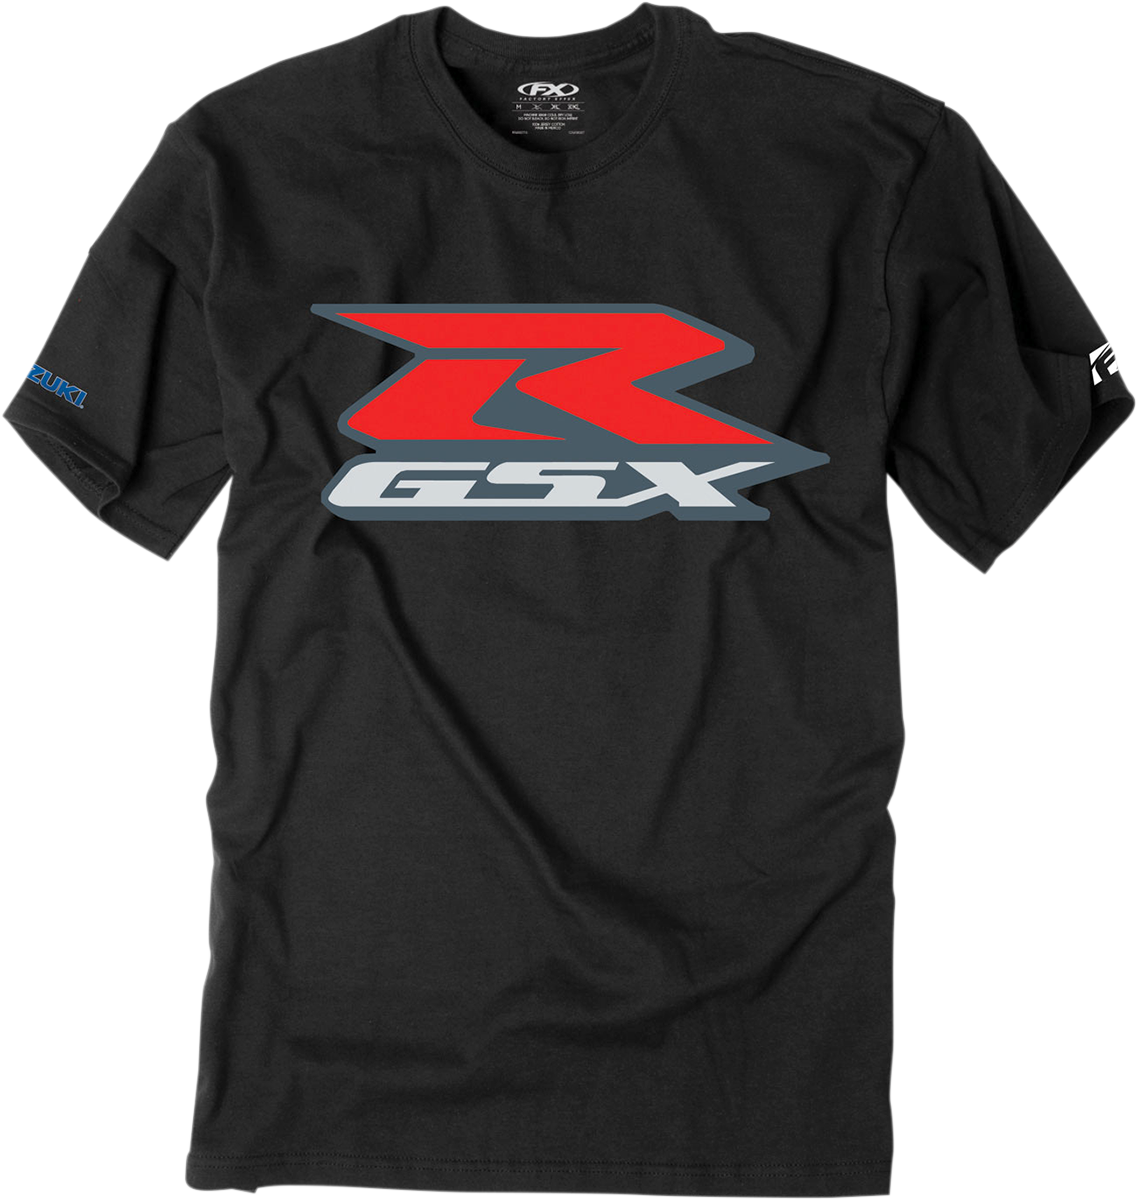 FACTORY EFFEX Suzuki GSXR T-Shirt - Black - 2XL 15-88486